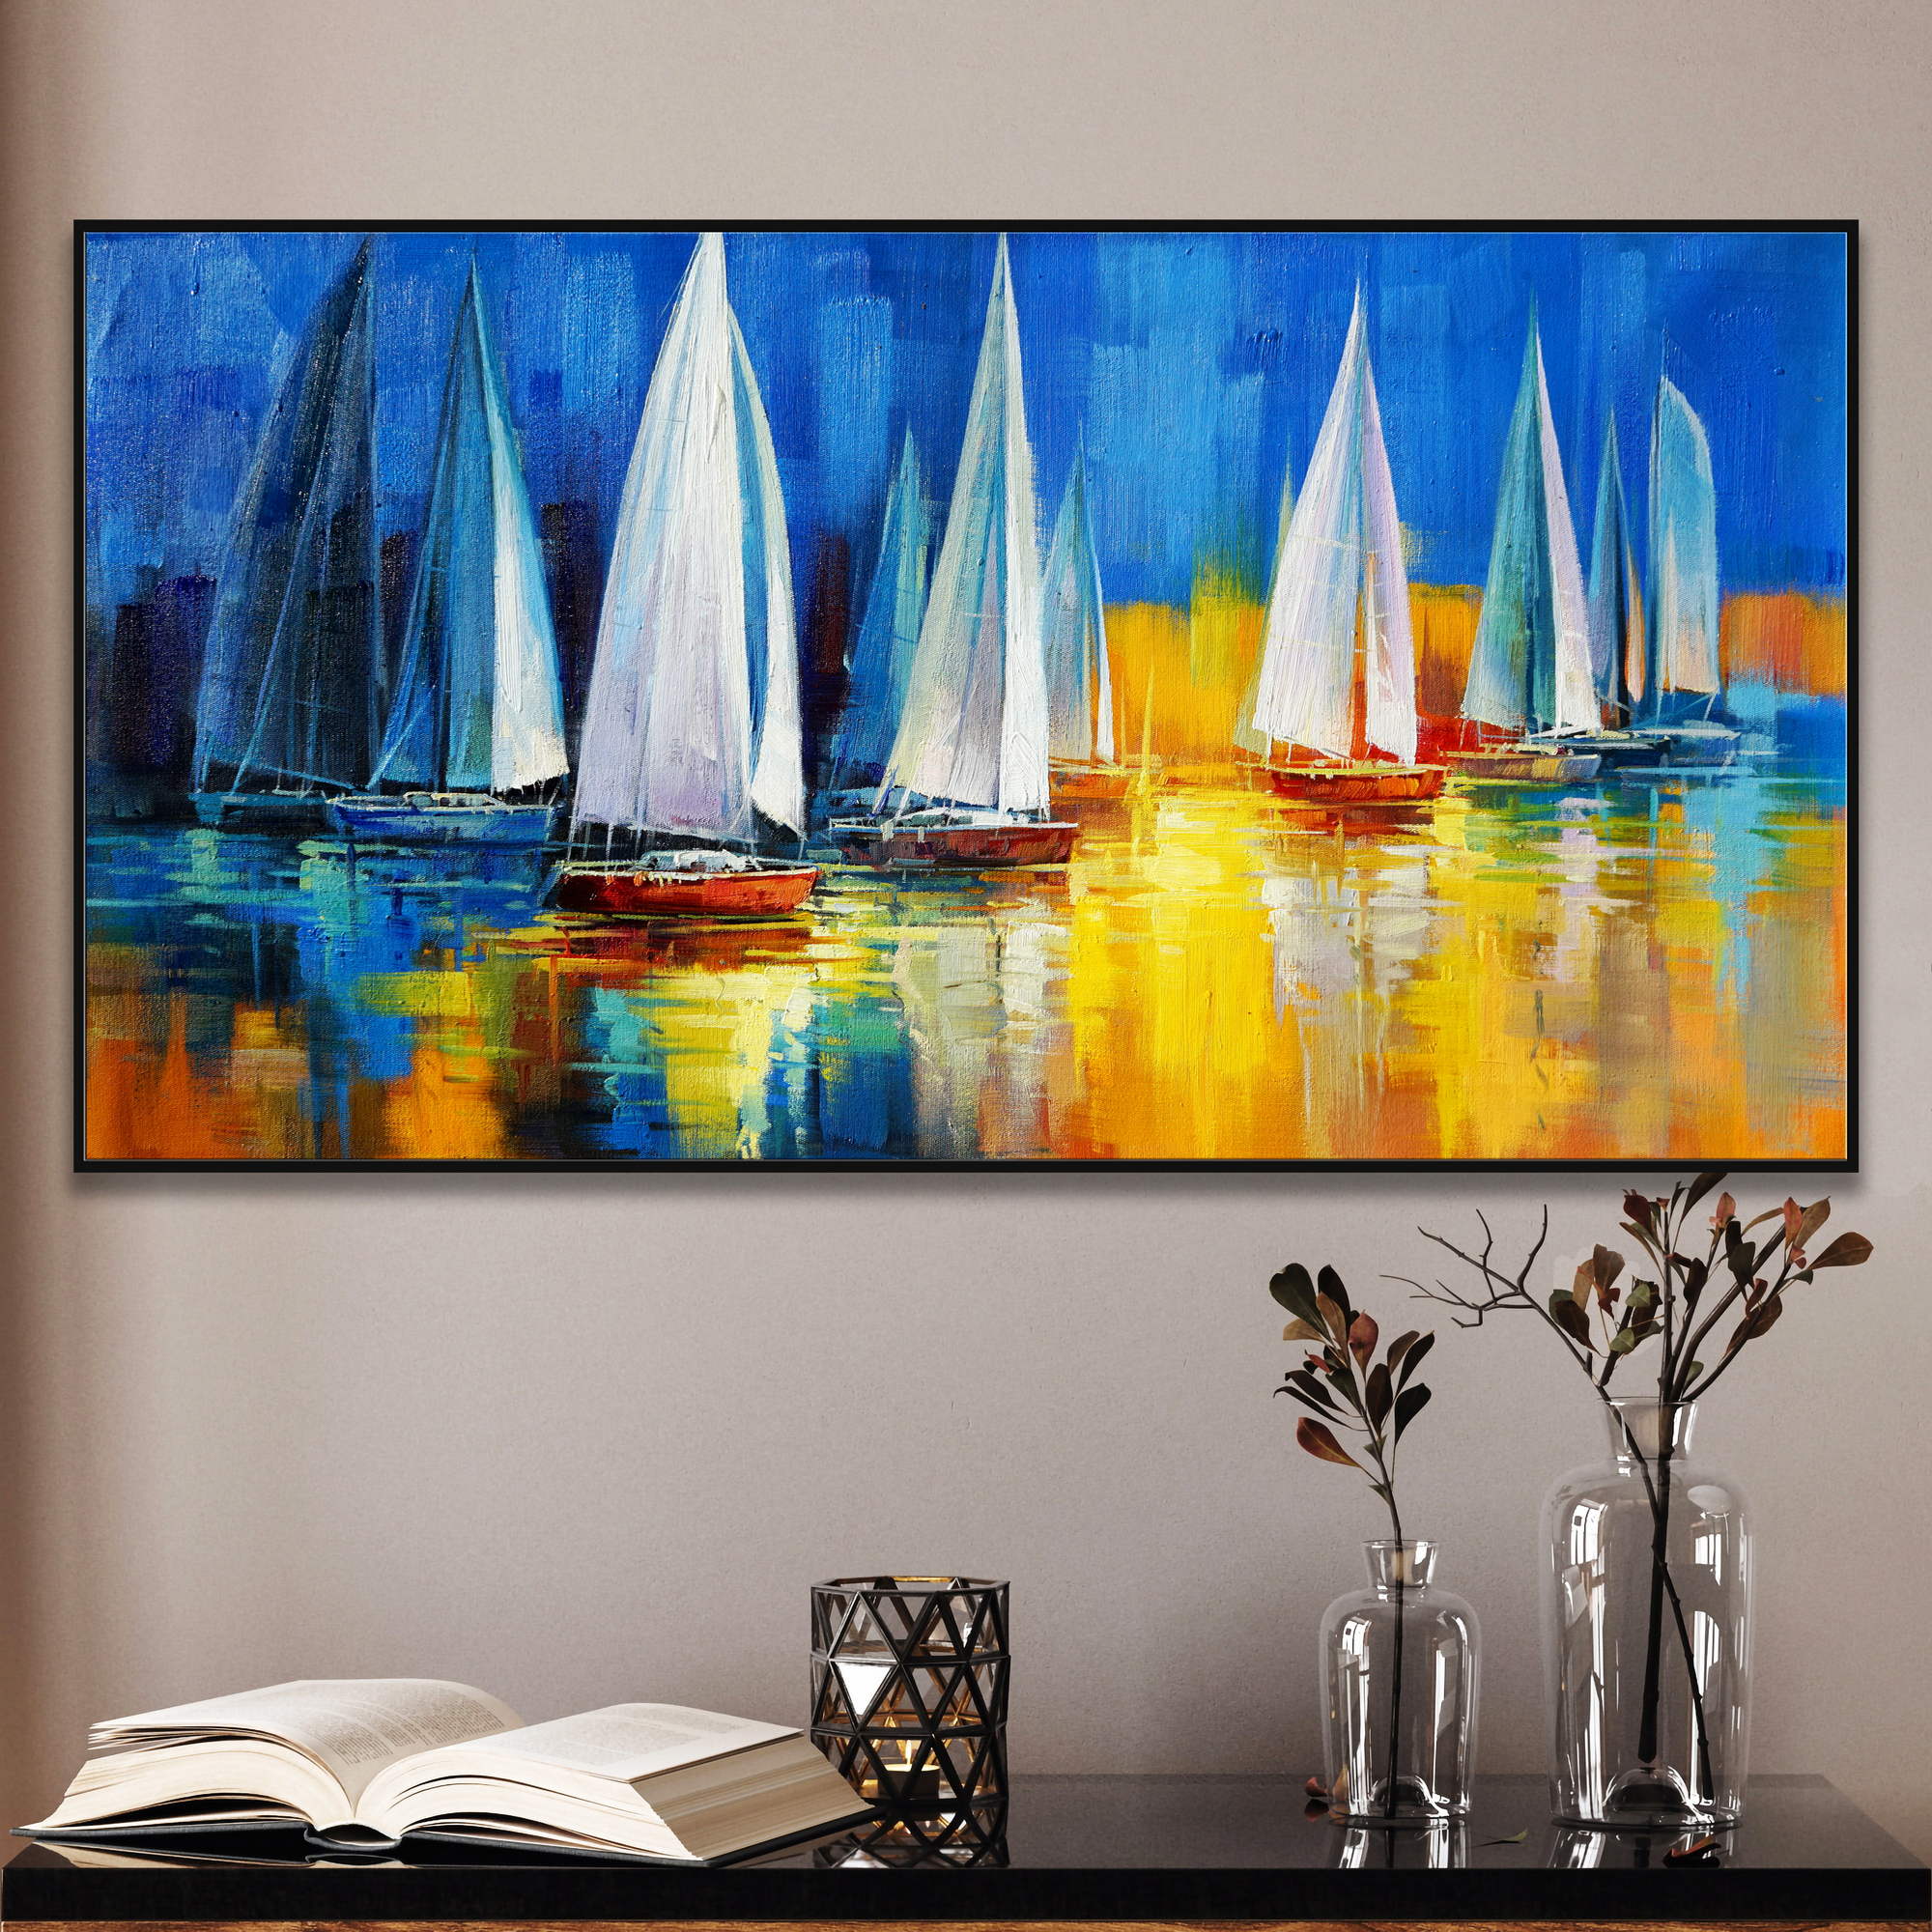 Dipinto con barche a vela e riflessi colorati sull'acqua al tramonto con skyline sfocato in fondo